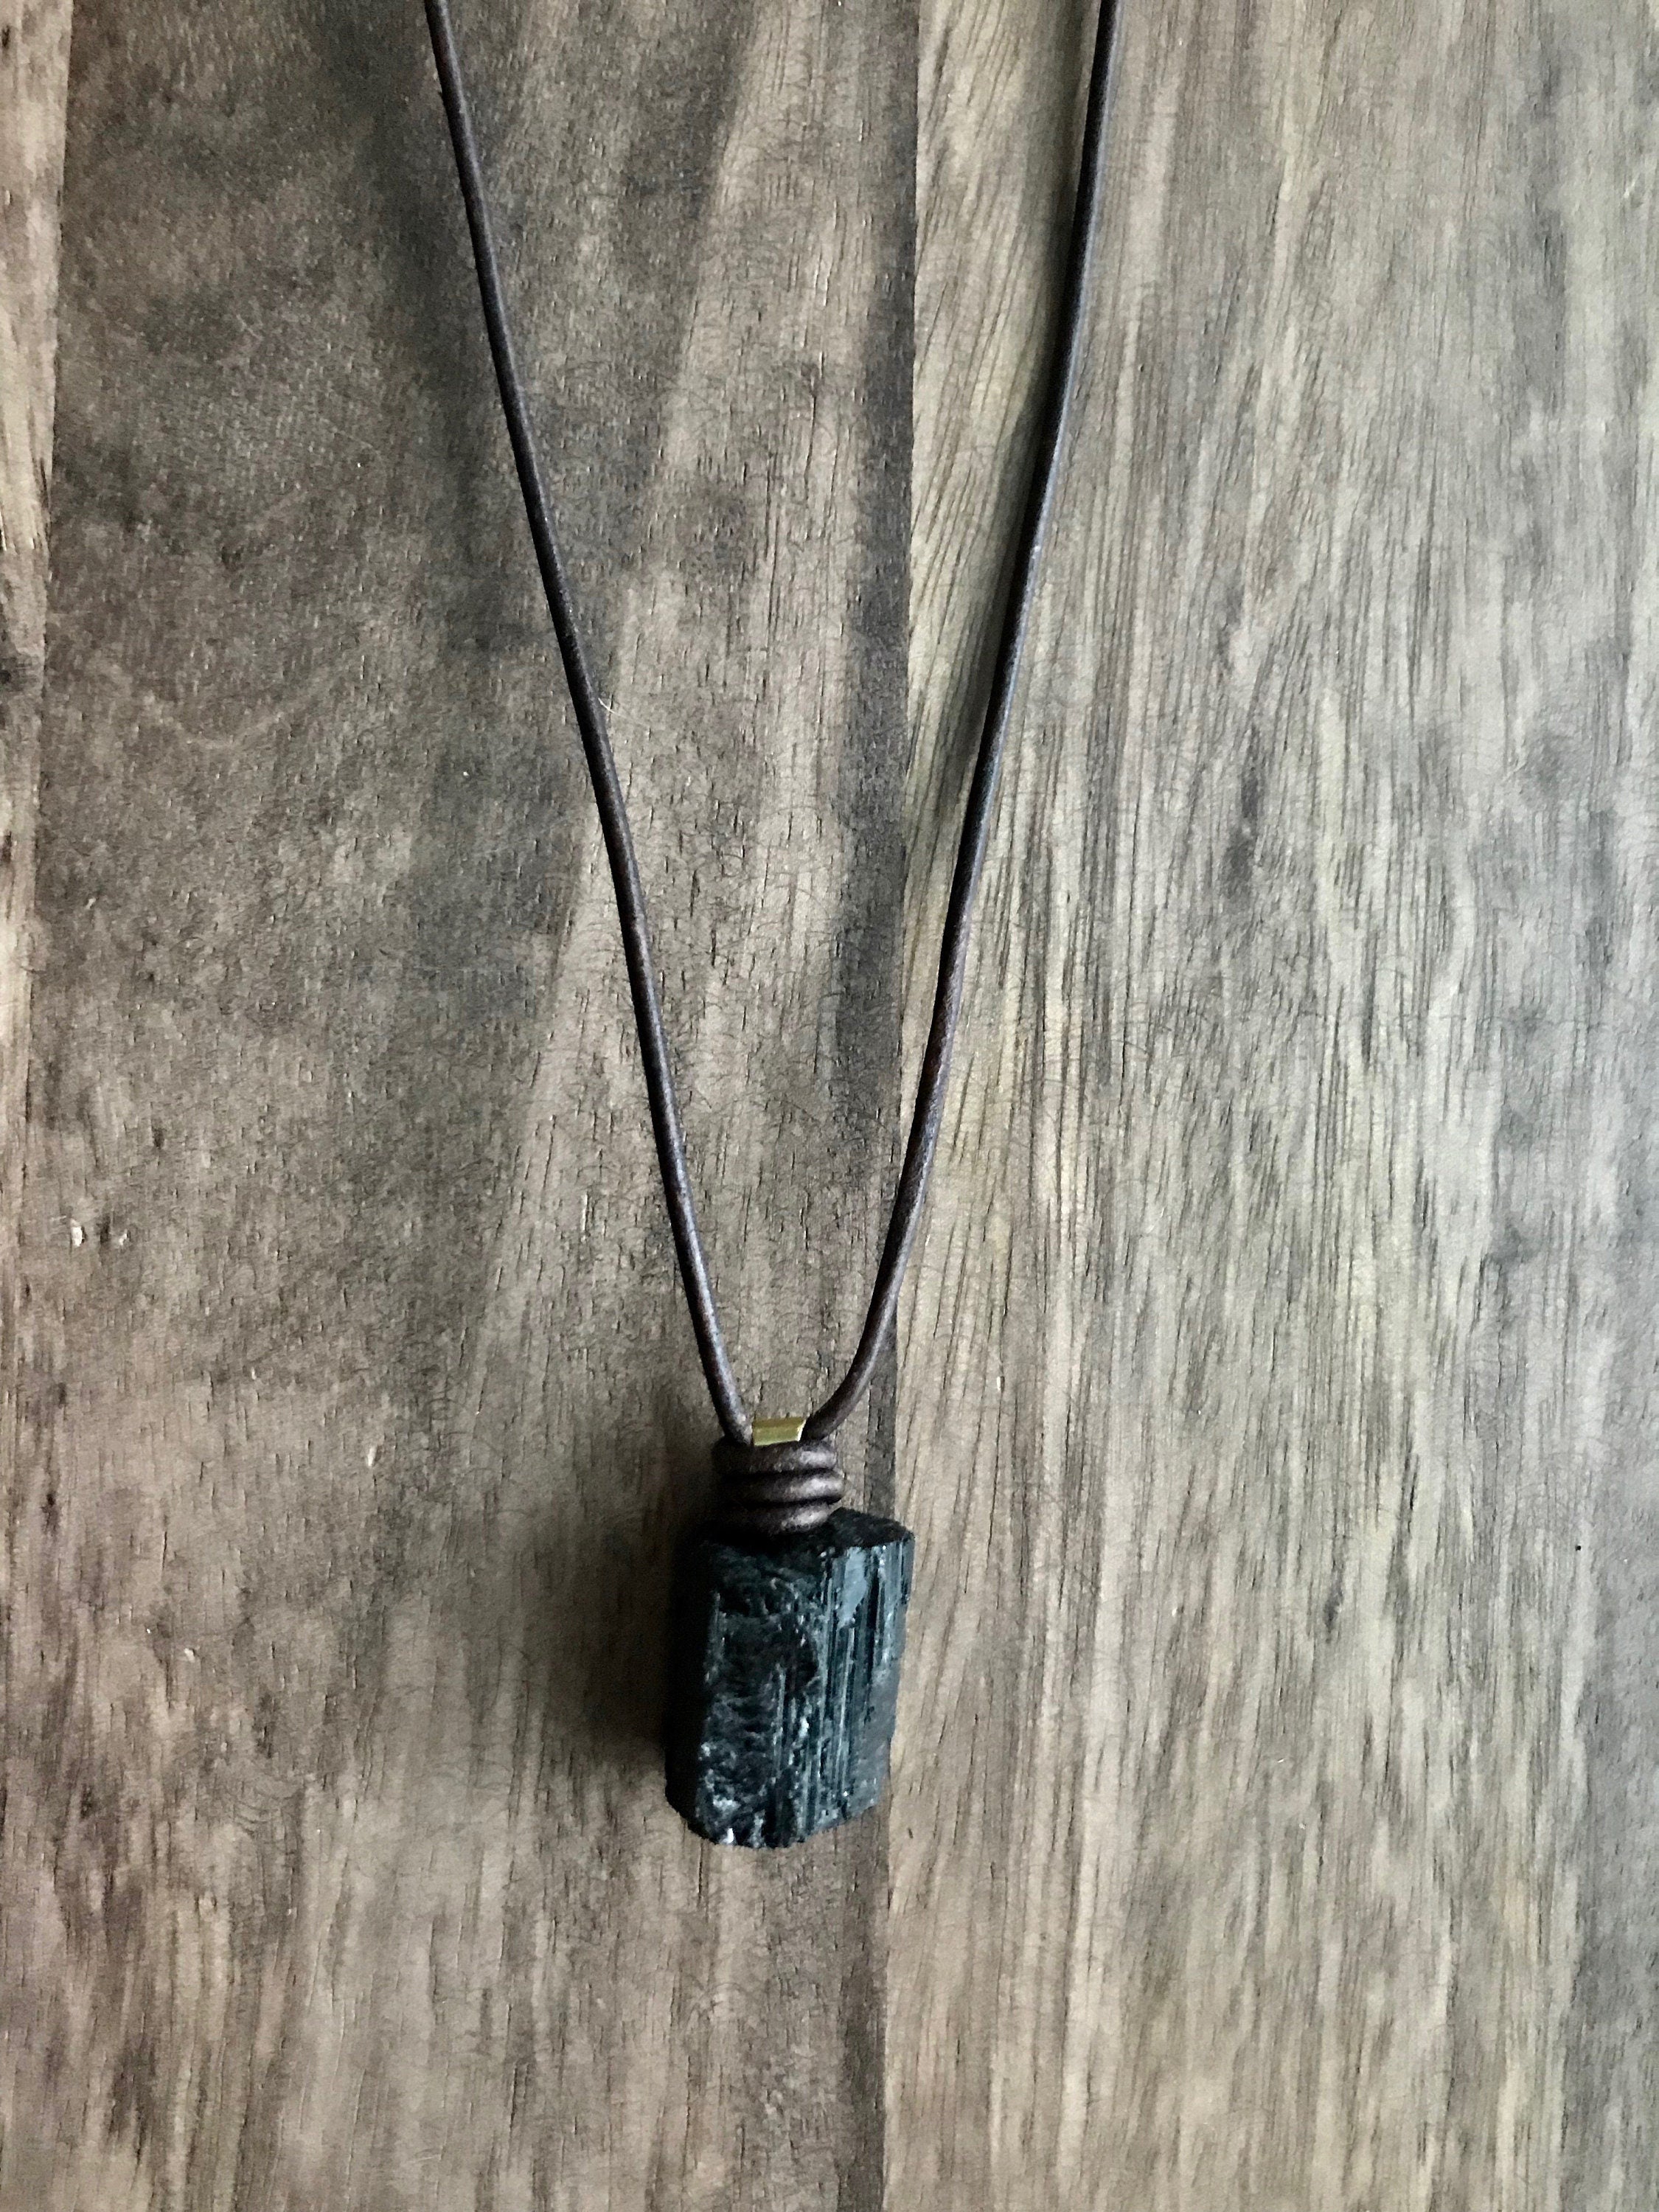 Black Tourmaline Necklace - The Rock Shop